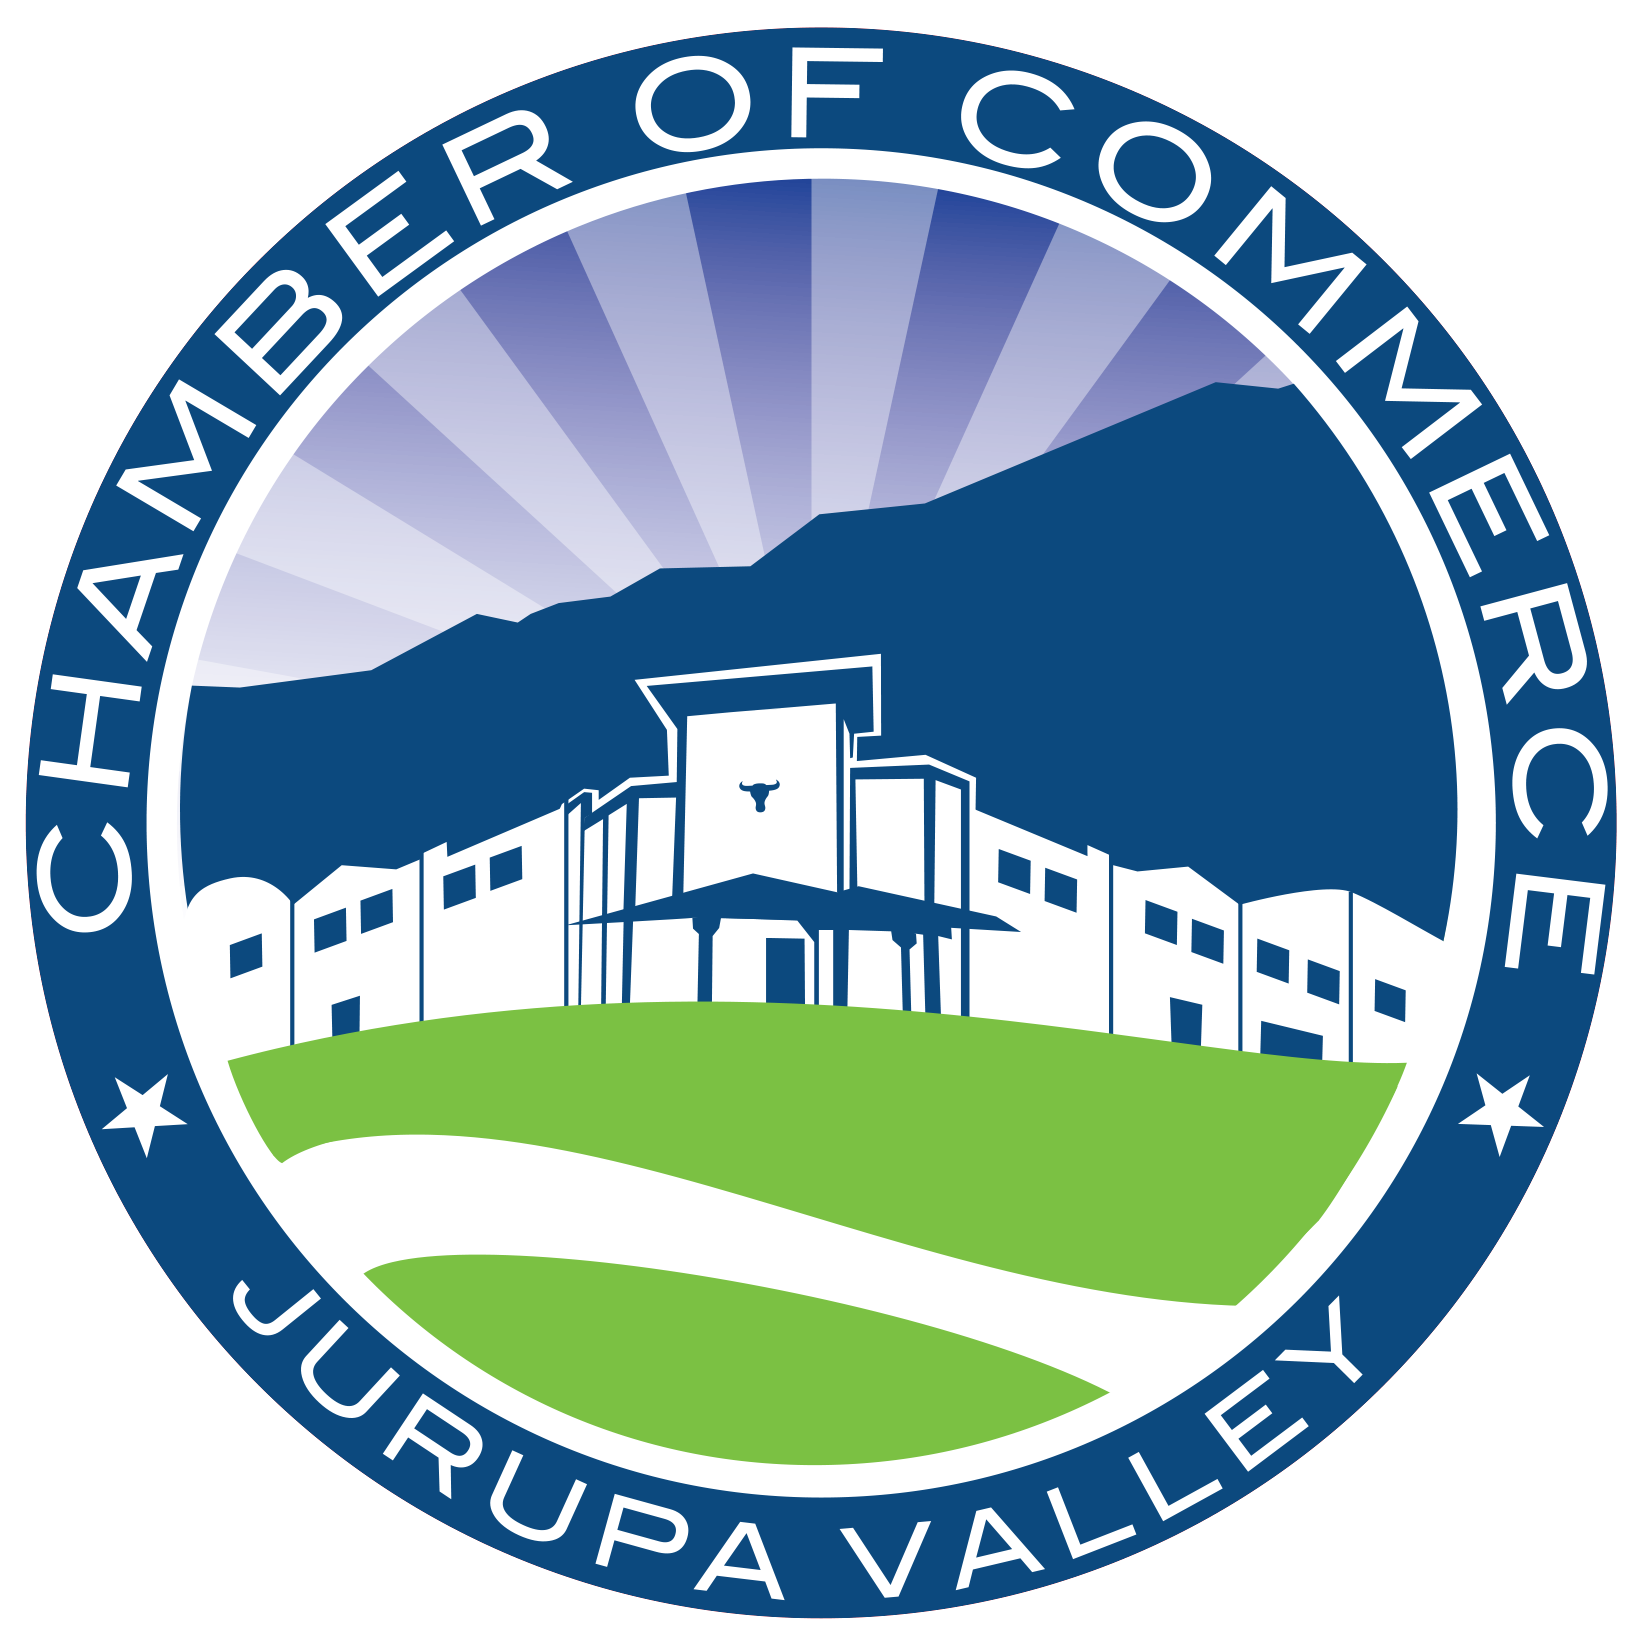 Jurupa Valley Chamber of Commerce logo